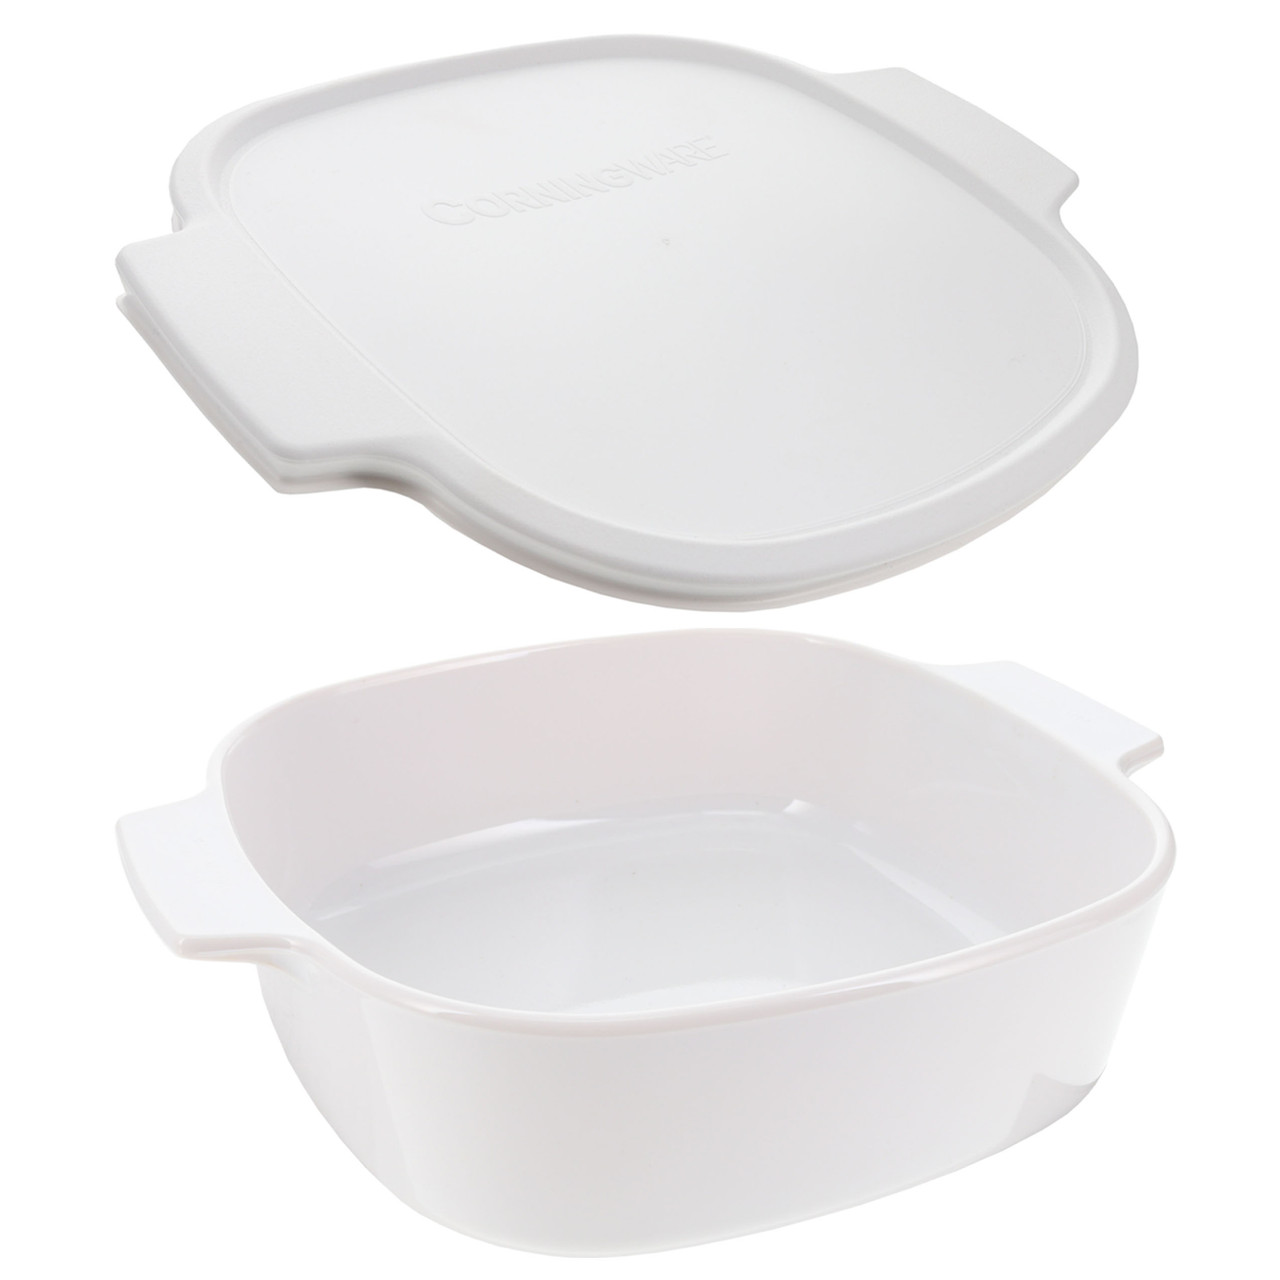 CorningWare® French White 10-pc. Casserole & Bakeware Set